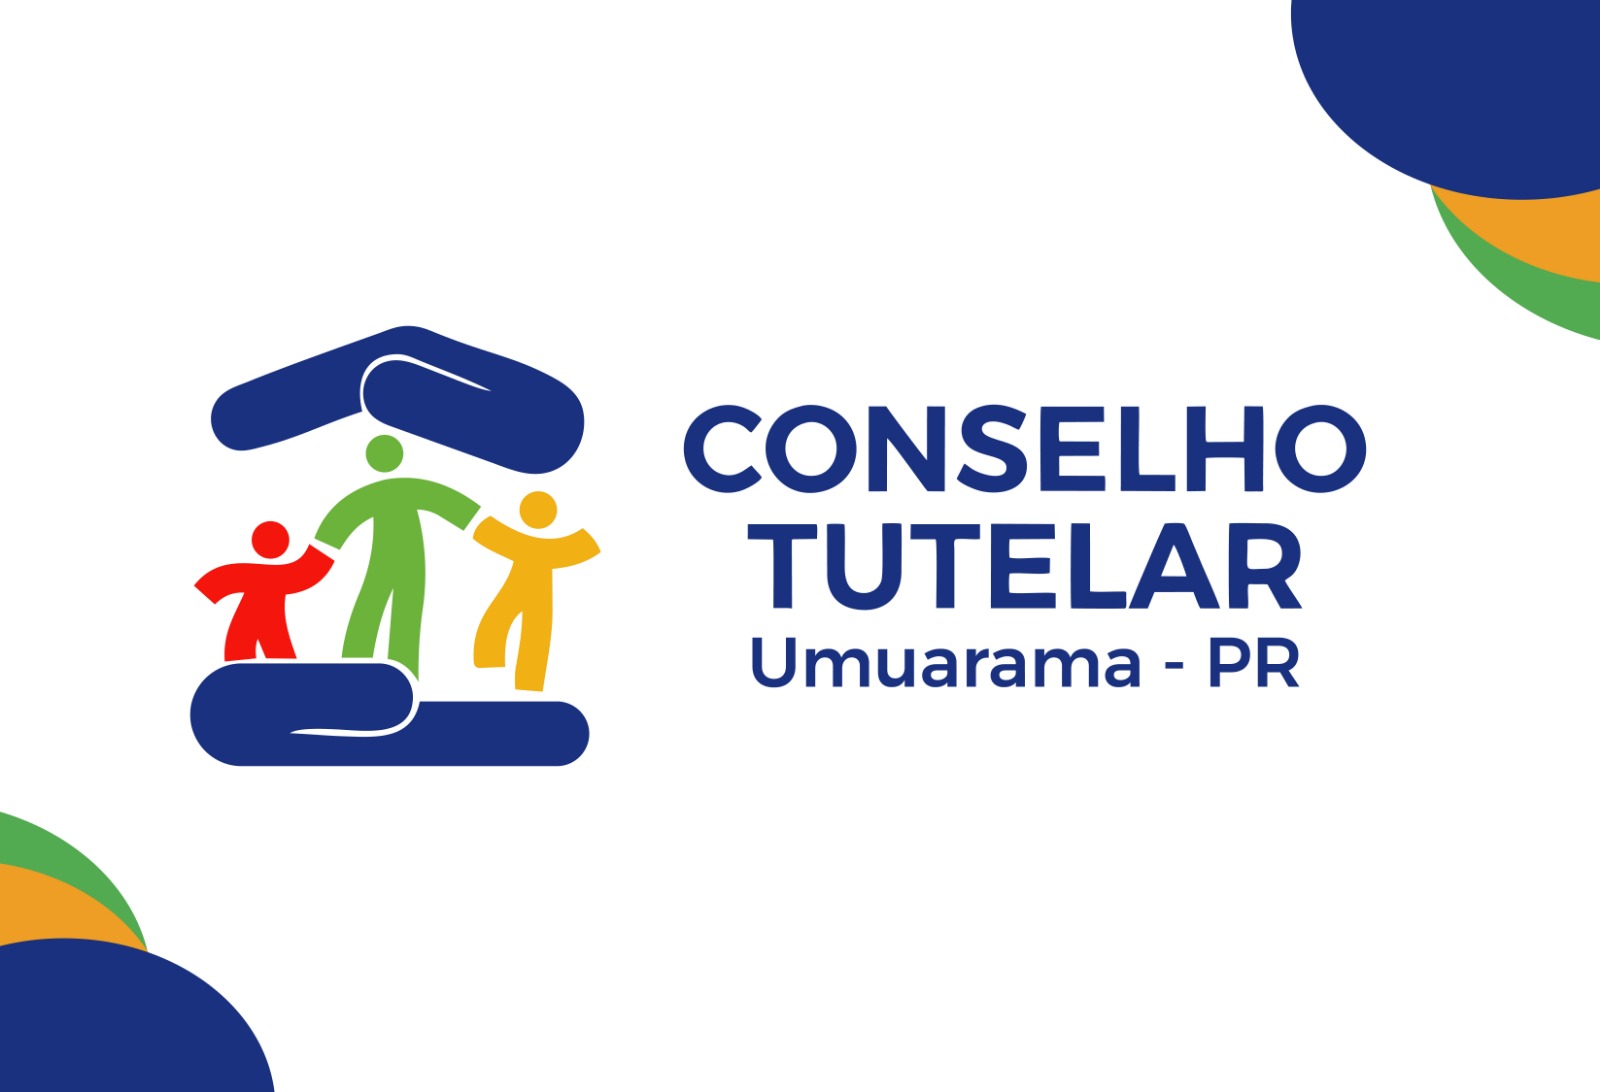 Jornal Ilustrado - CMDCA divulga lista completa com nomes, números e fotos dos candidatos ao Conselho Tutelar